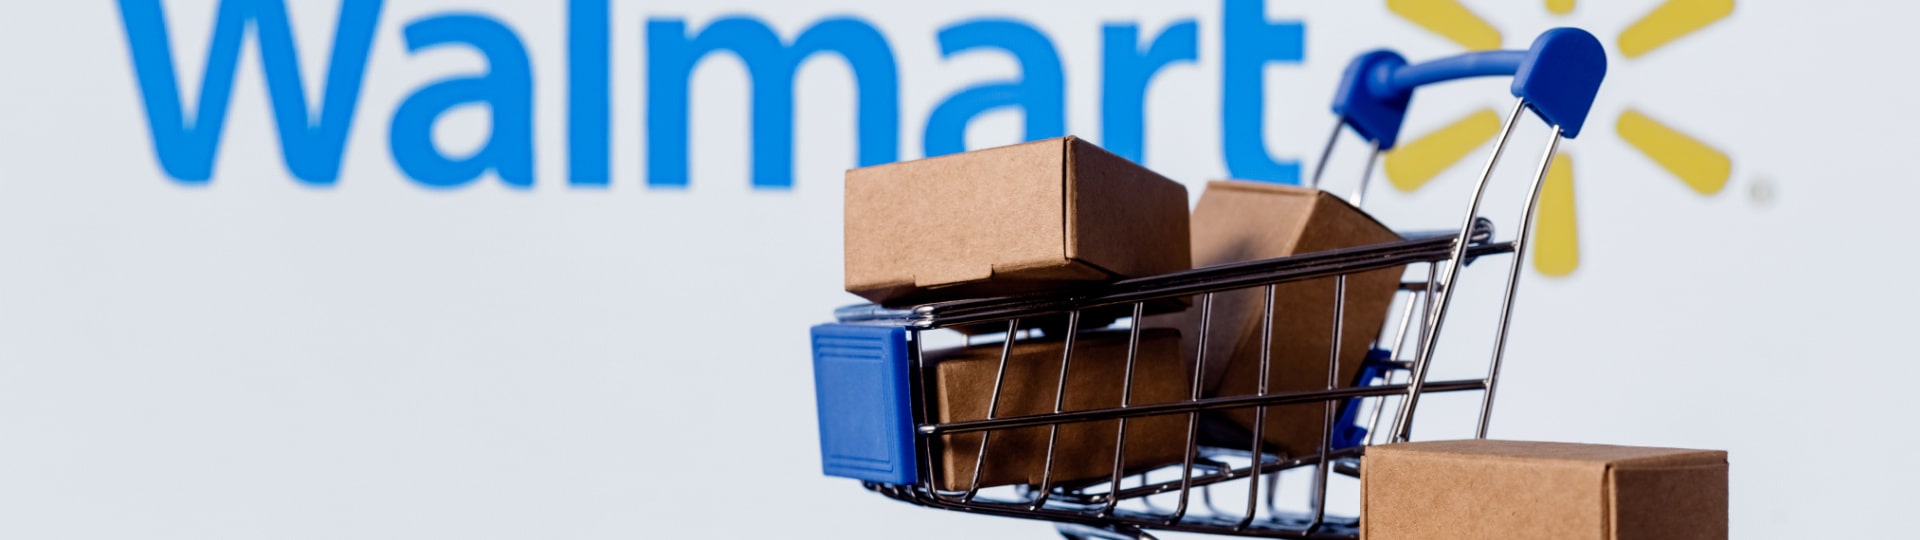 Walmart zvýšil provozní zisk o 6,7 %